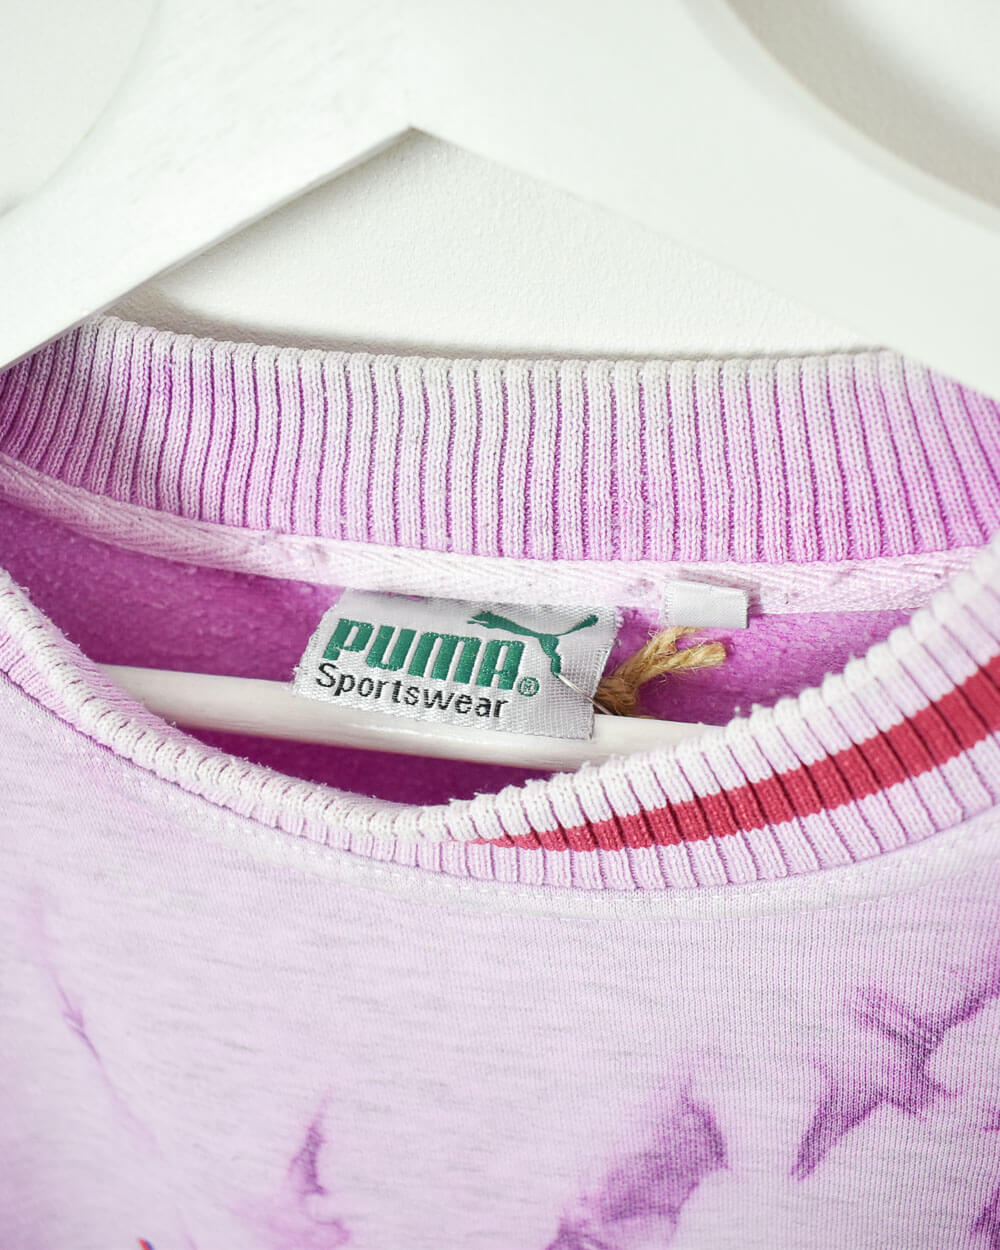 Purple Puma International Performance Sweatshirt - Medium